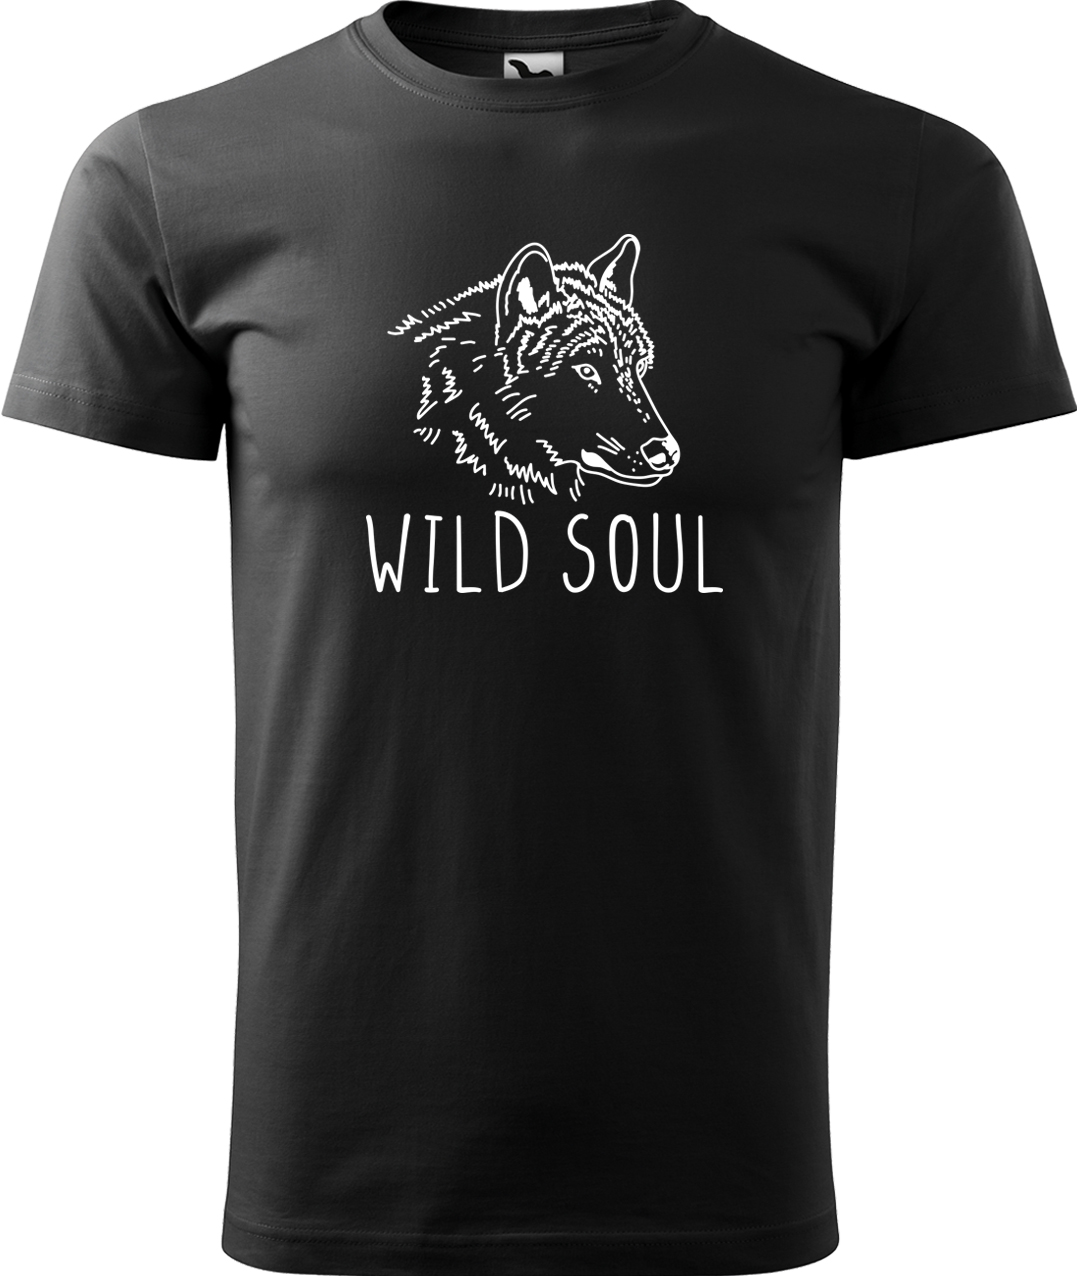 Pánské tričko s vlkem - Wild soul Velikost: L, Barva: Černá (01), Střih: pánský